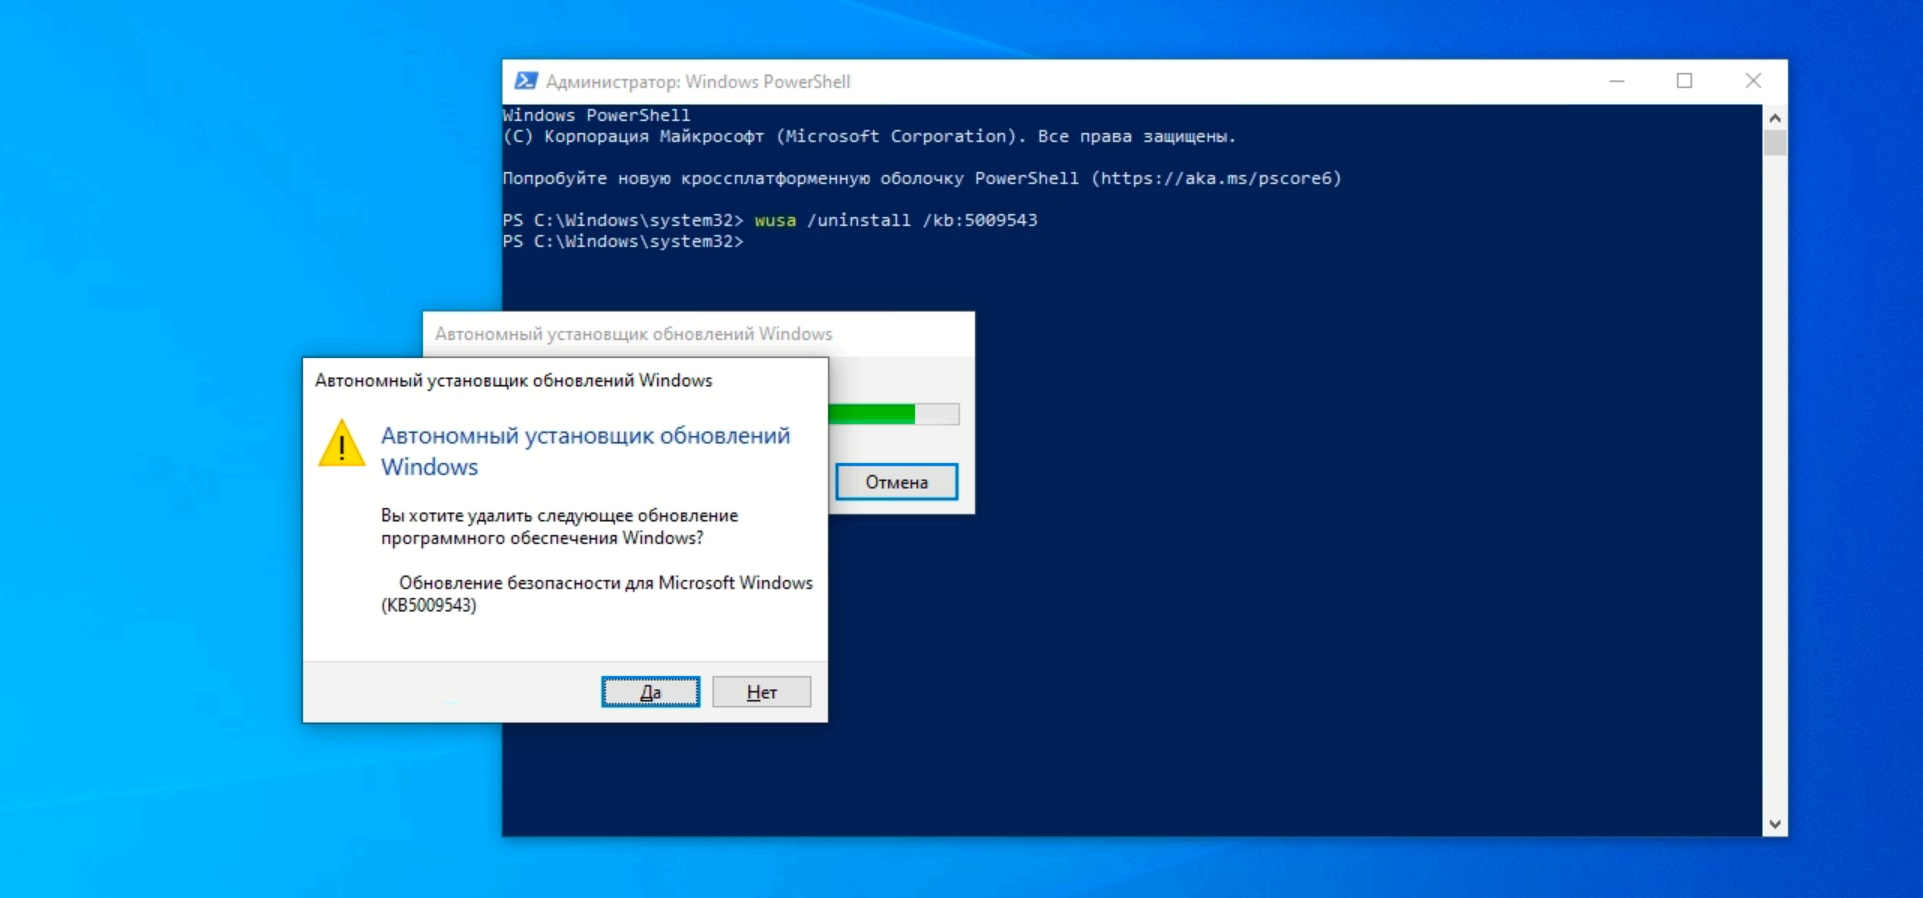 Удаление обновлений с помощью PowerShell в Windows 10